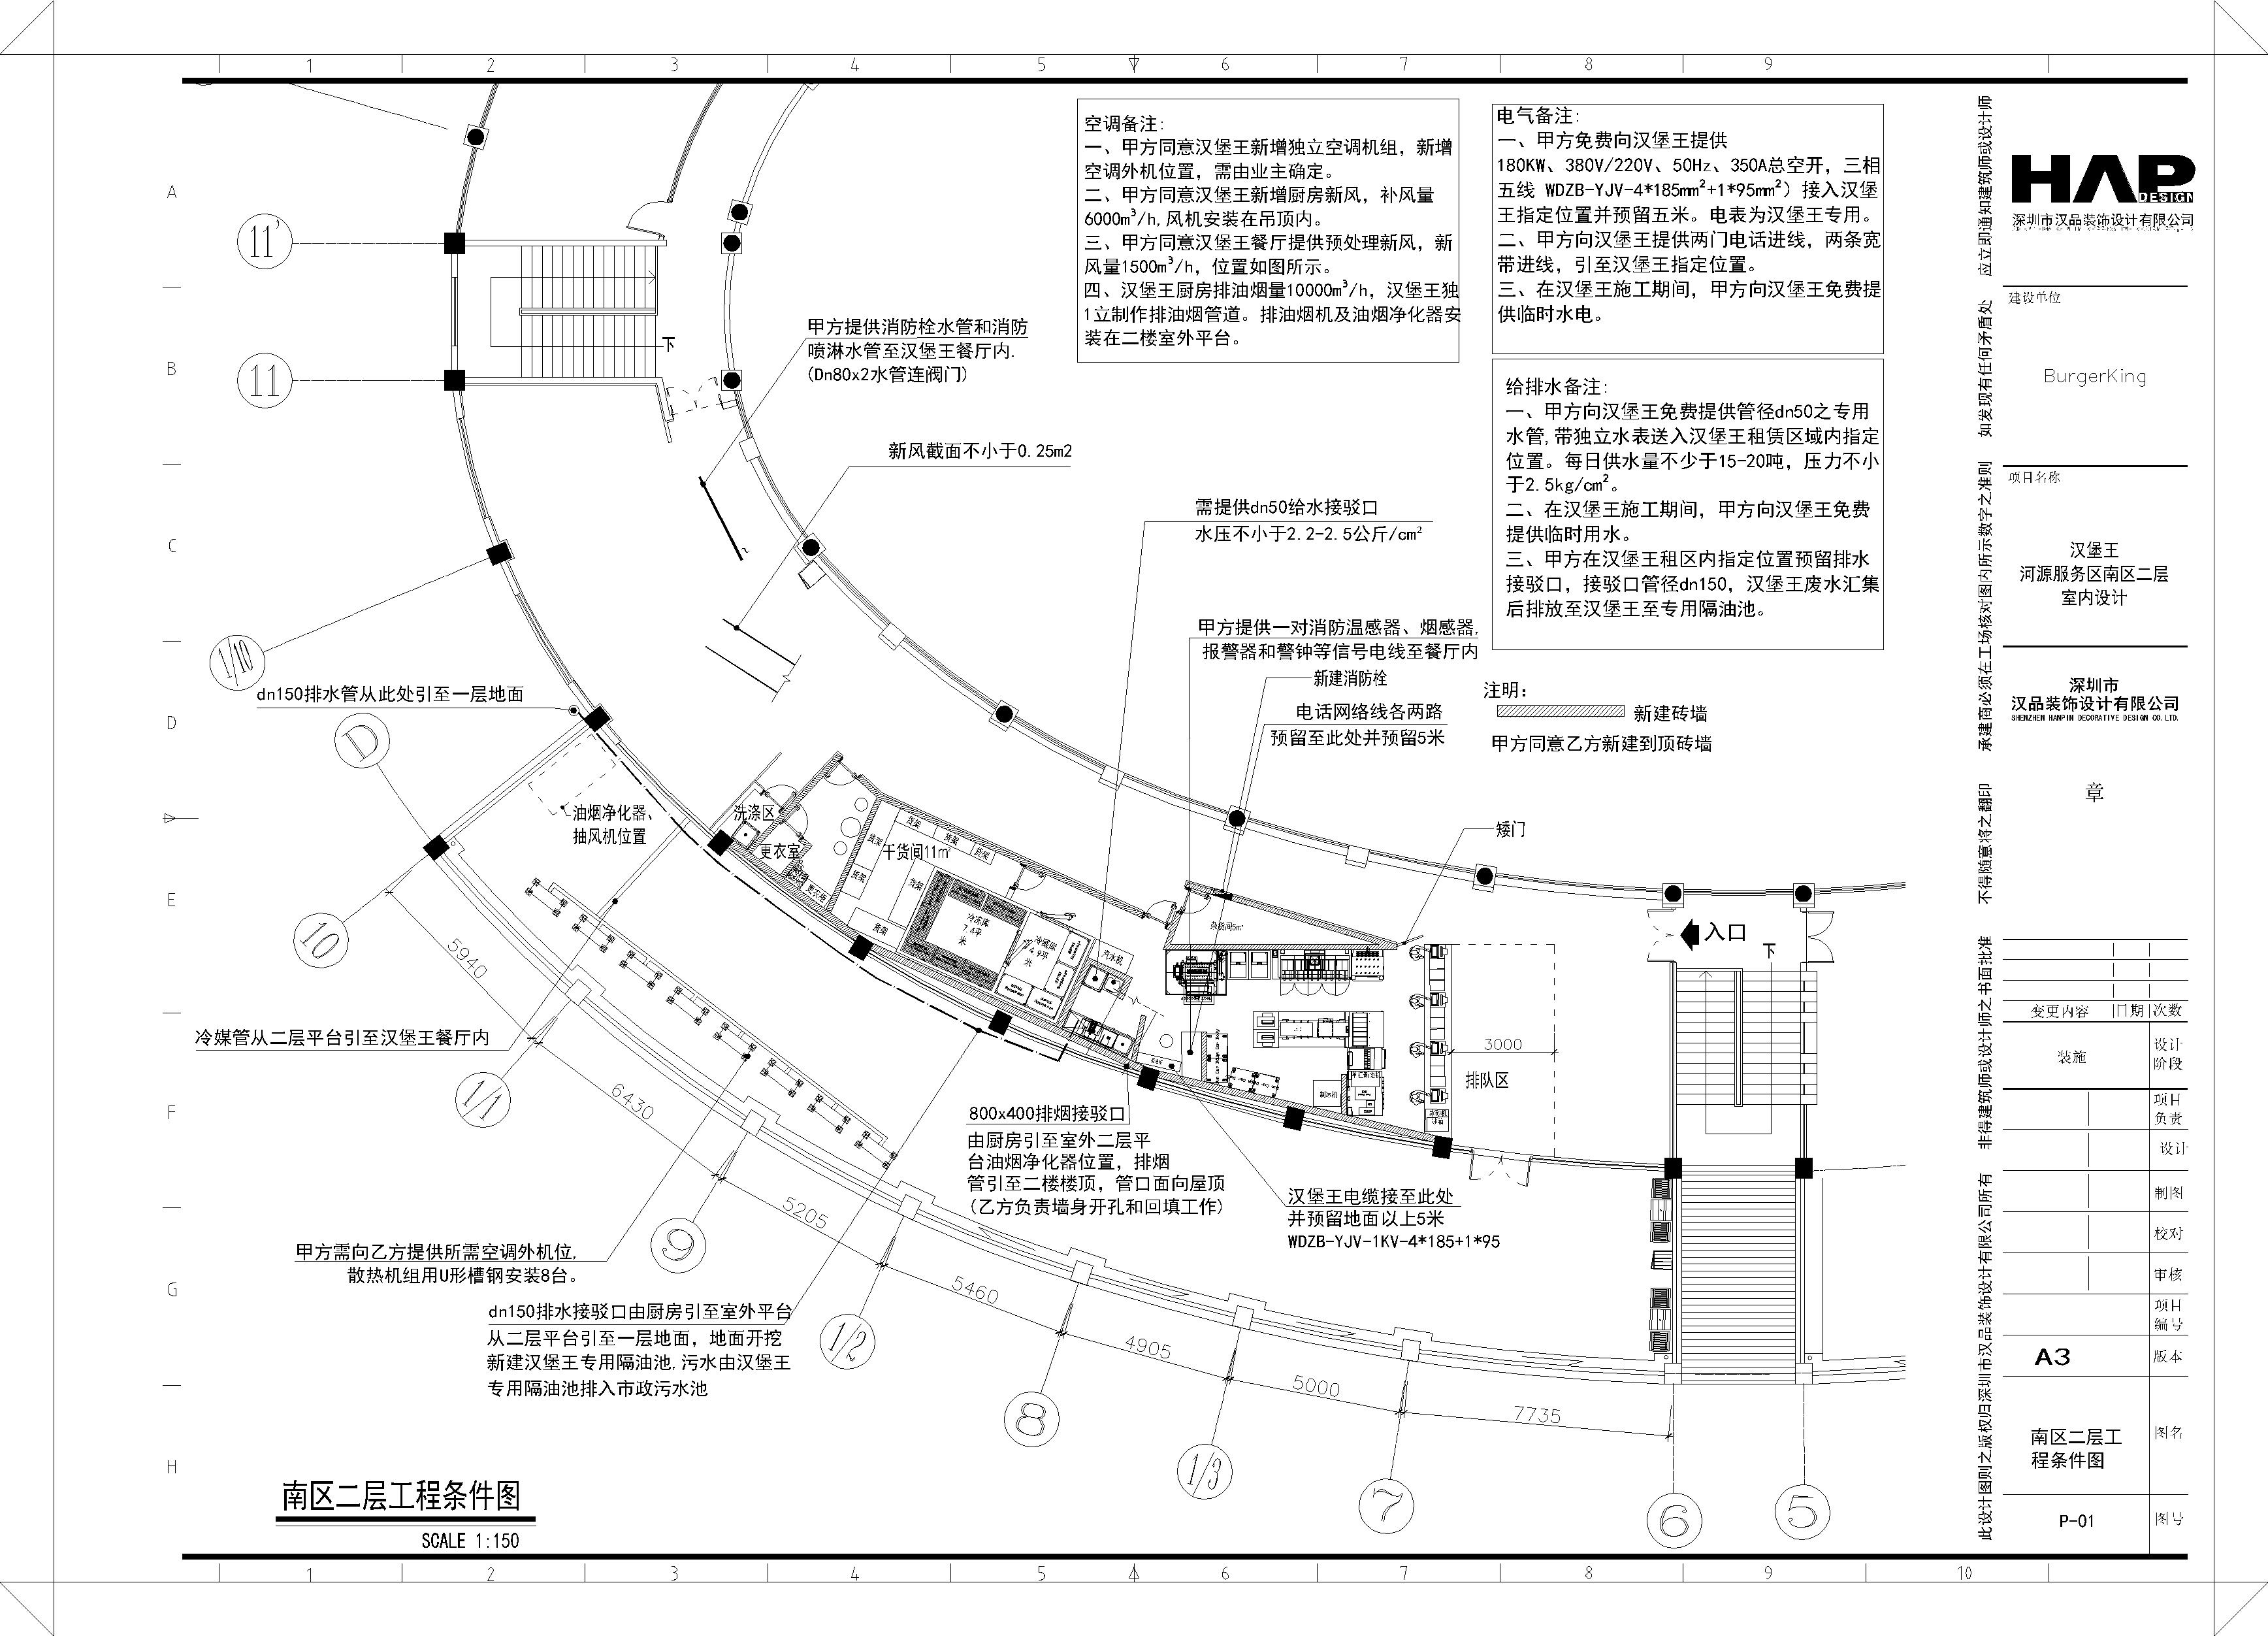 汉某王快餐店服务区-热水服务区南区二层业主图CAD